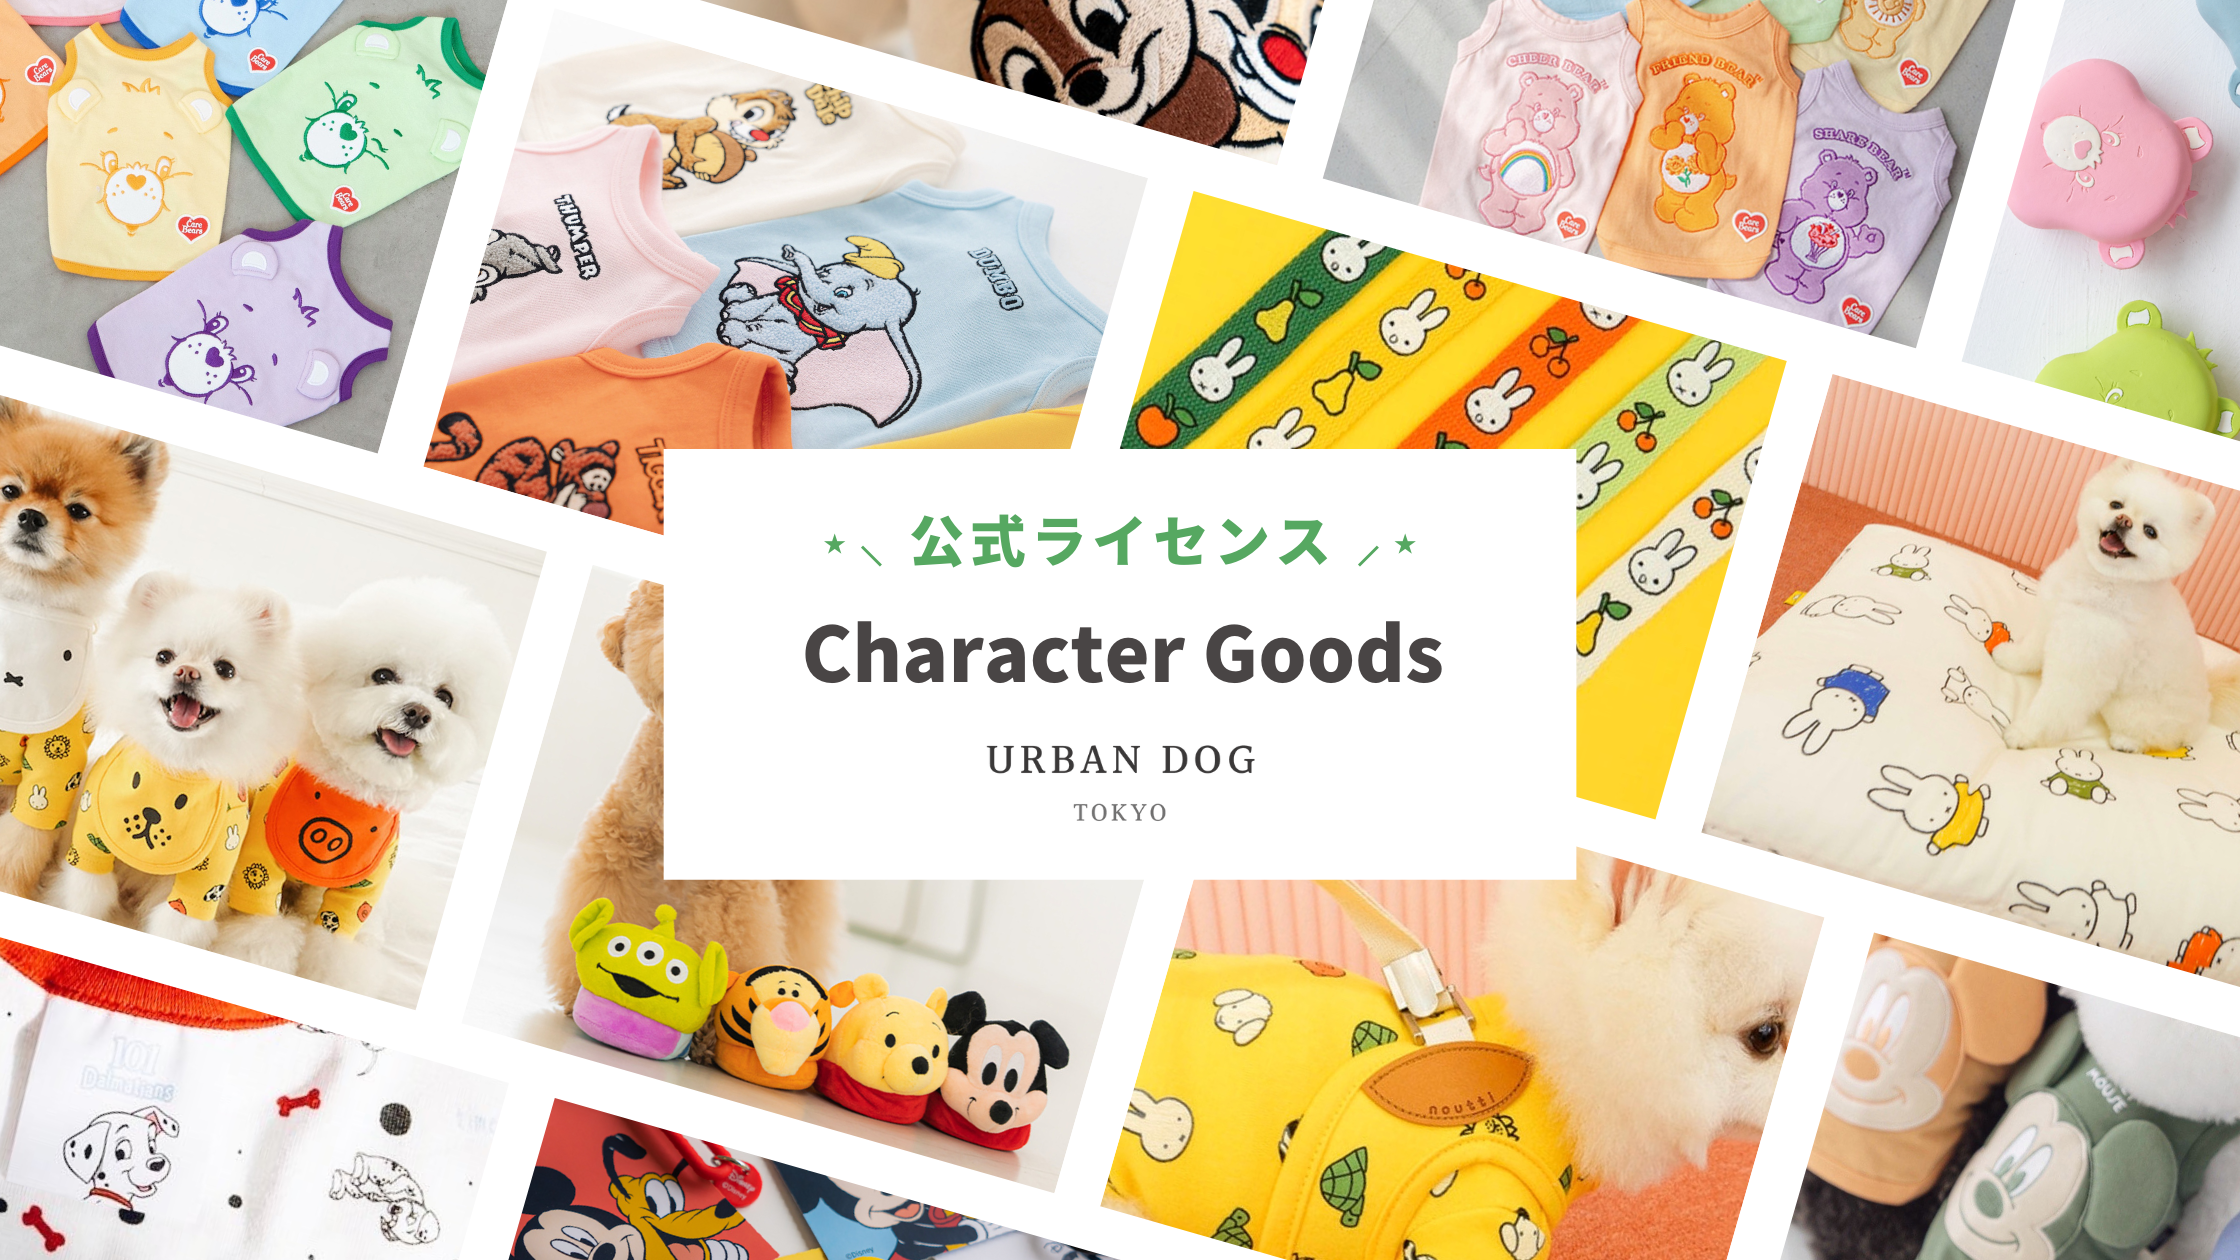 ドッグウェア通販 Urban Dog Tokyo 人気海外ブランドのドッグウェア多数販売